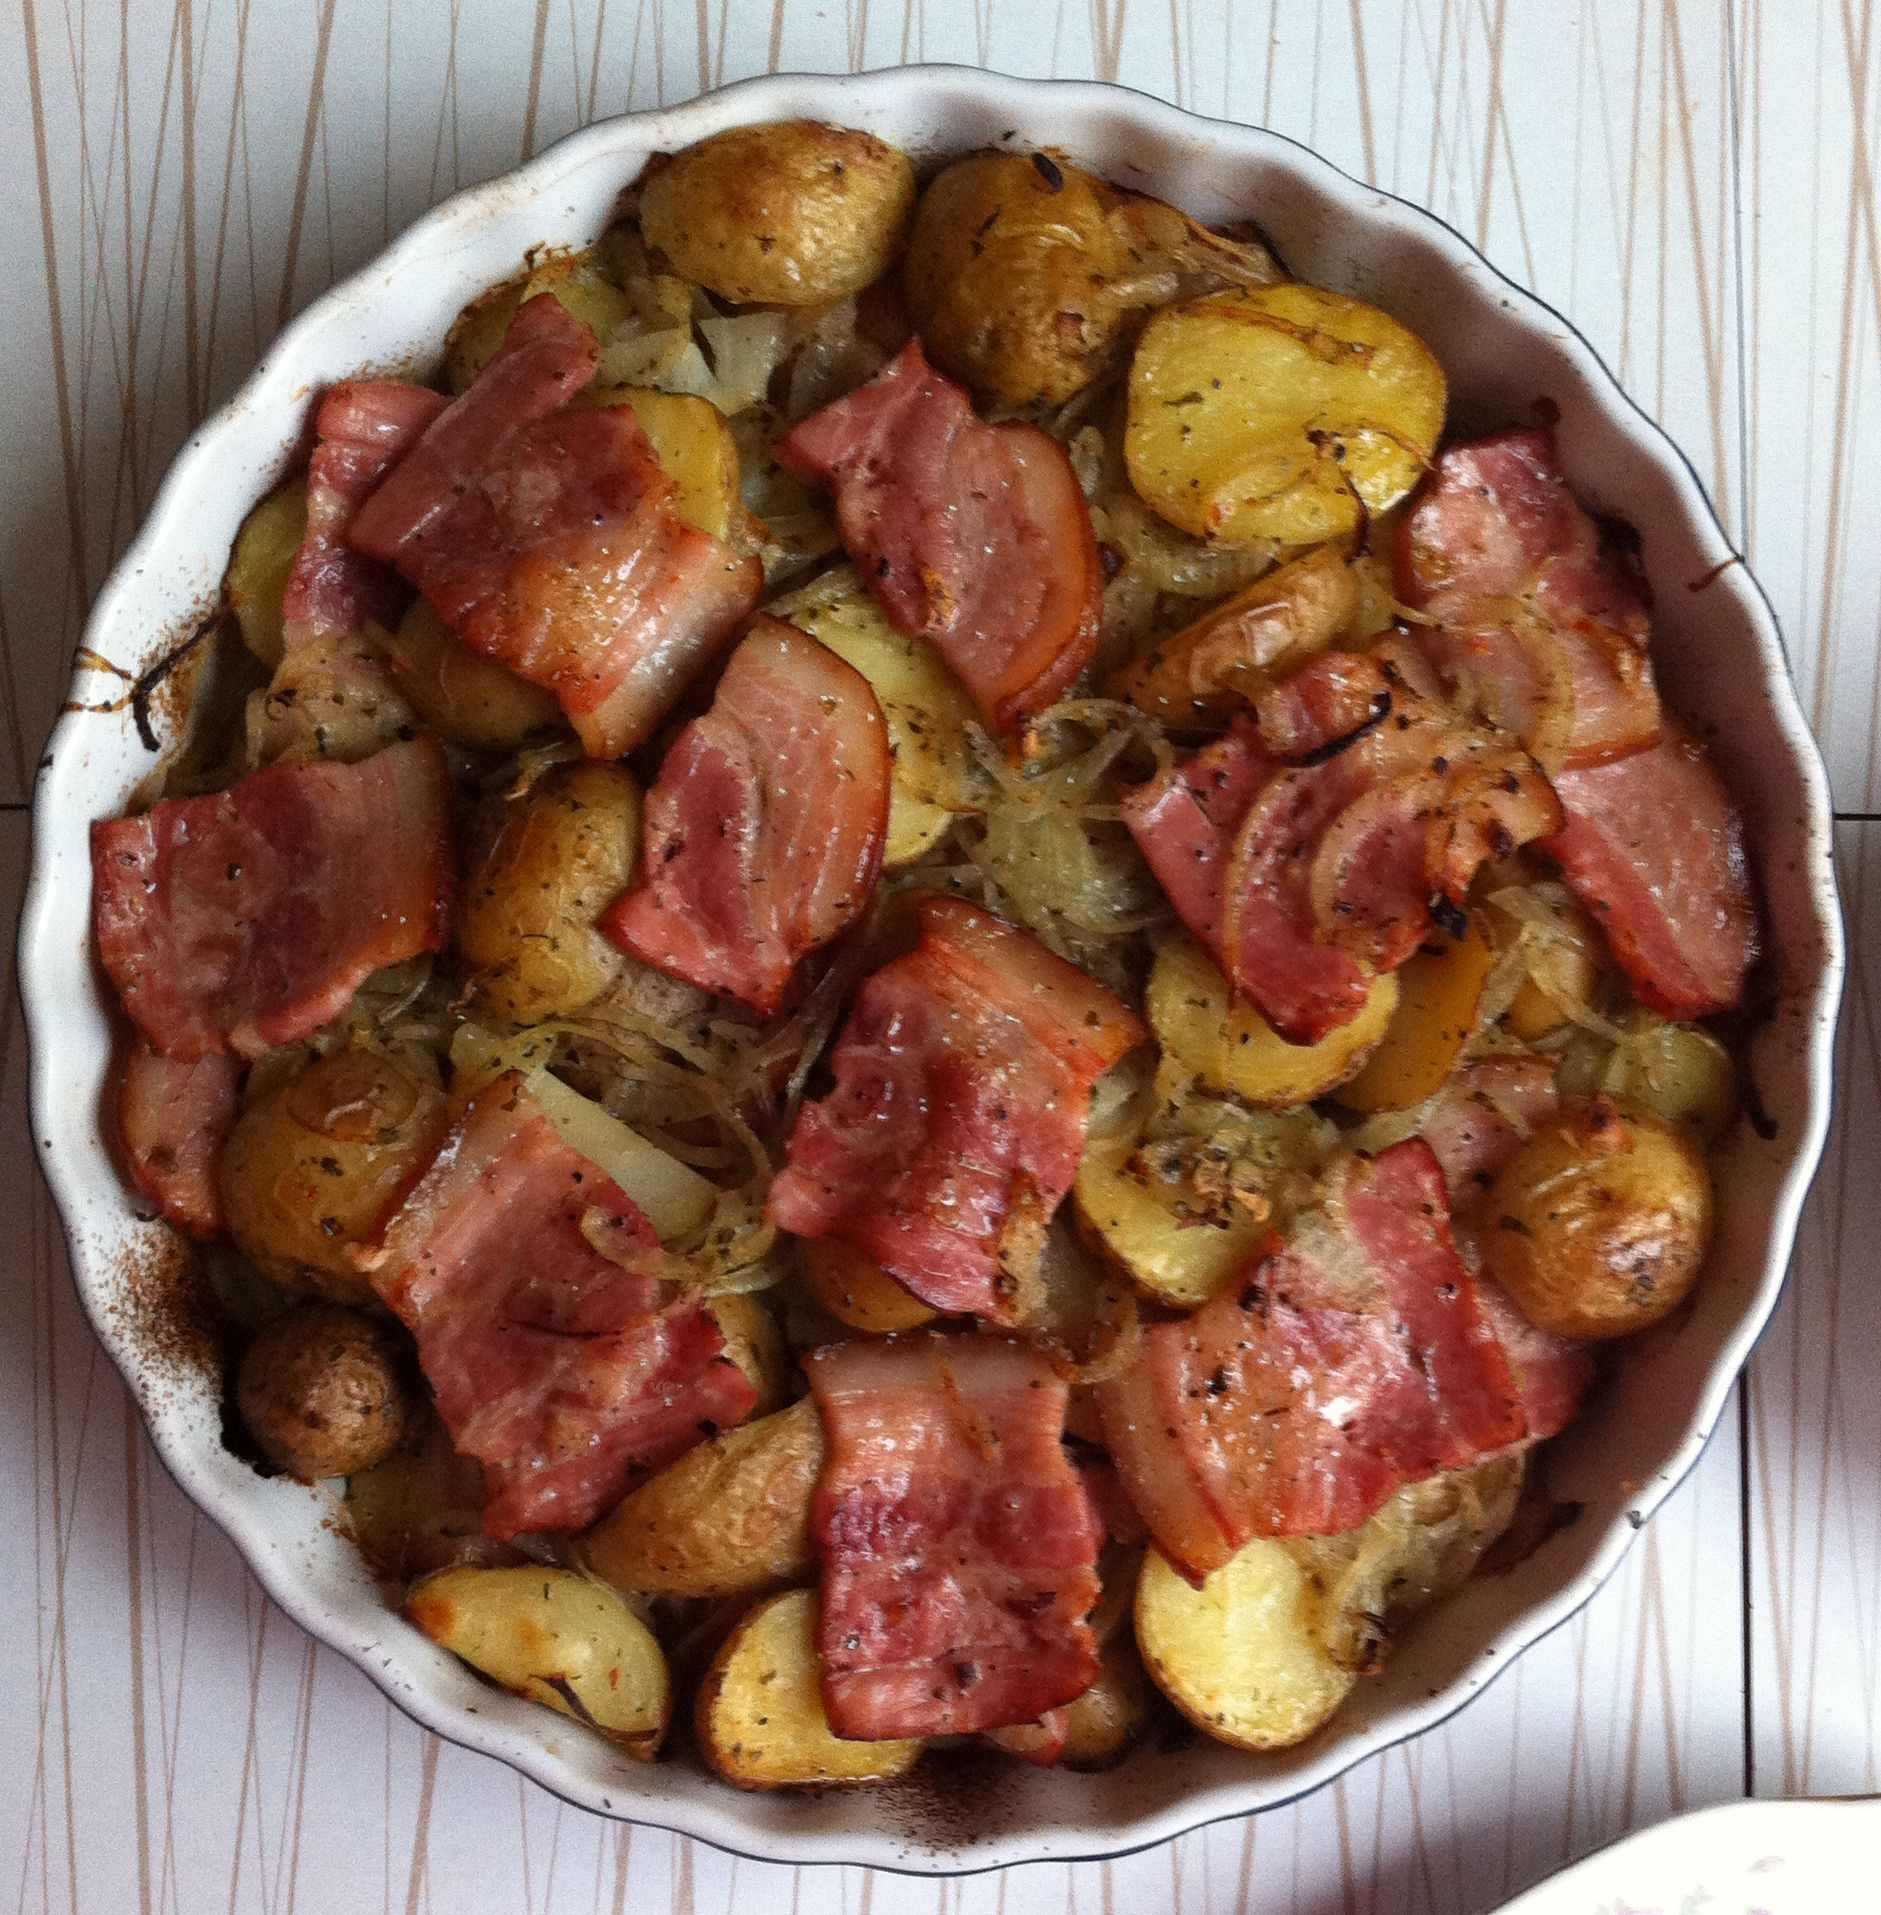 Жареный картофель дольками по-деревенски (готовим на сковороде)